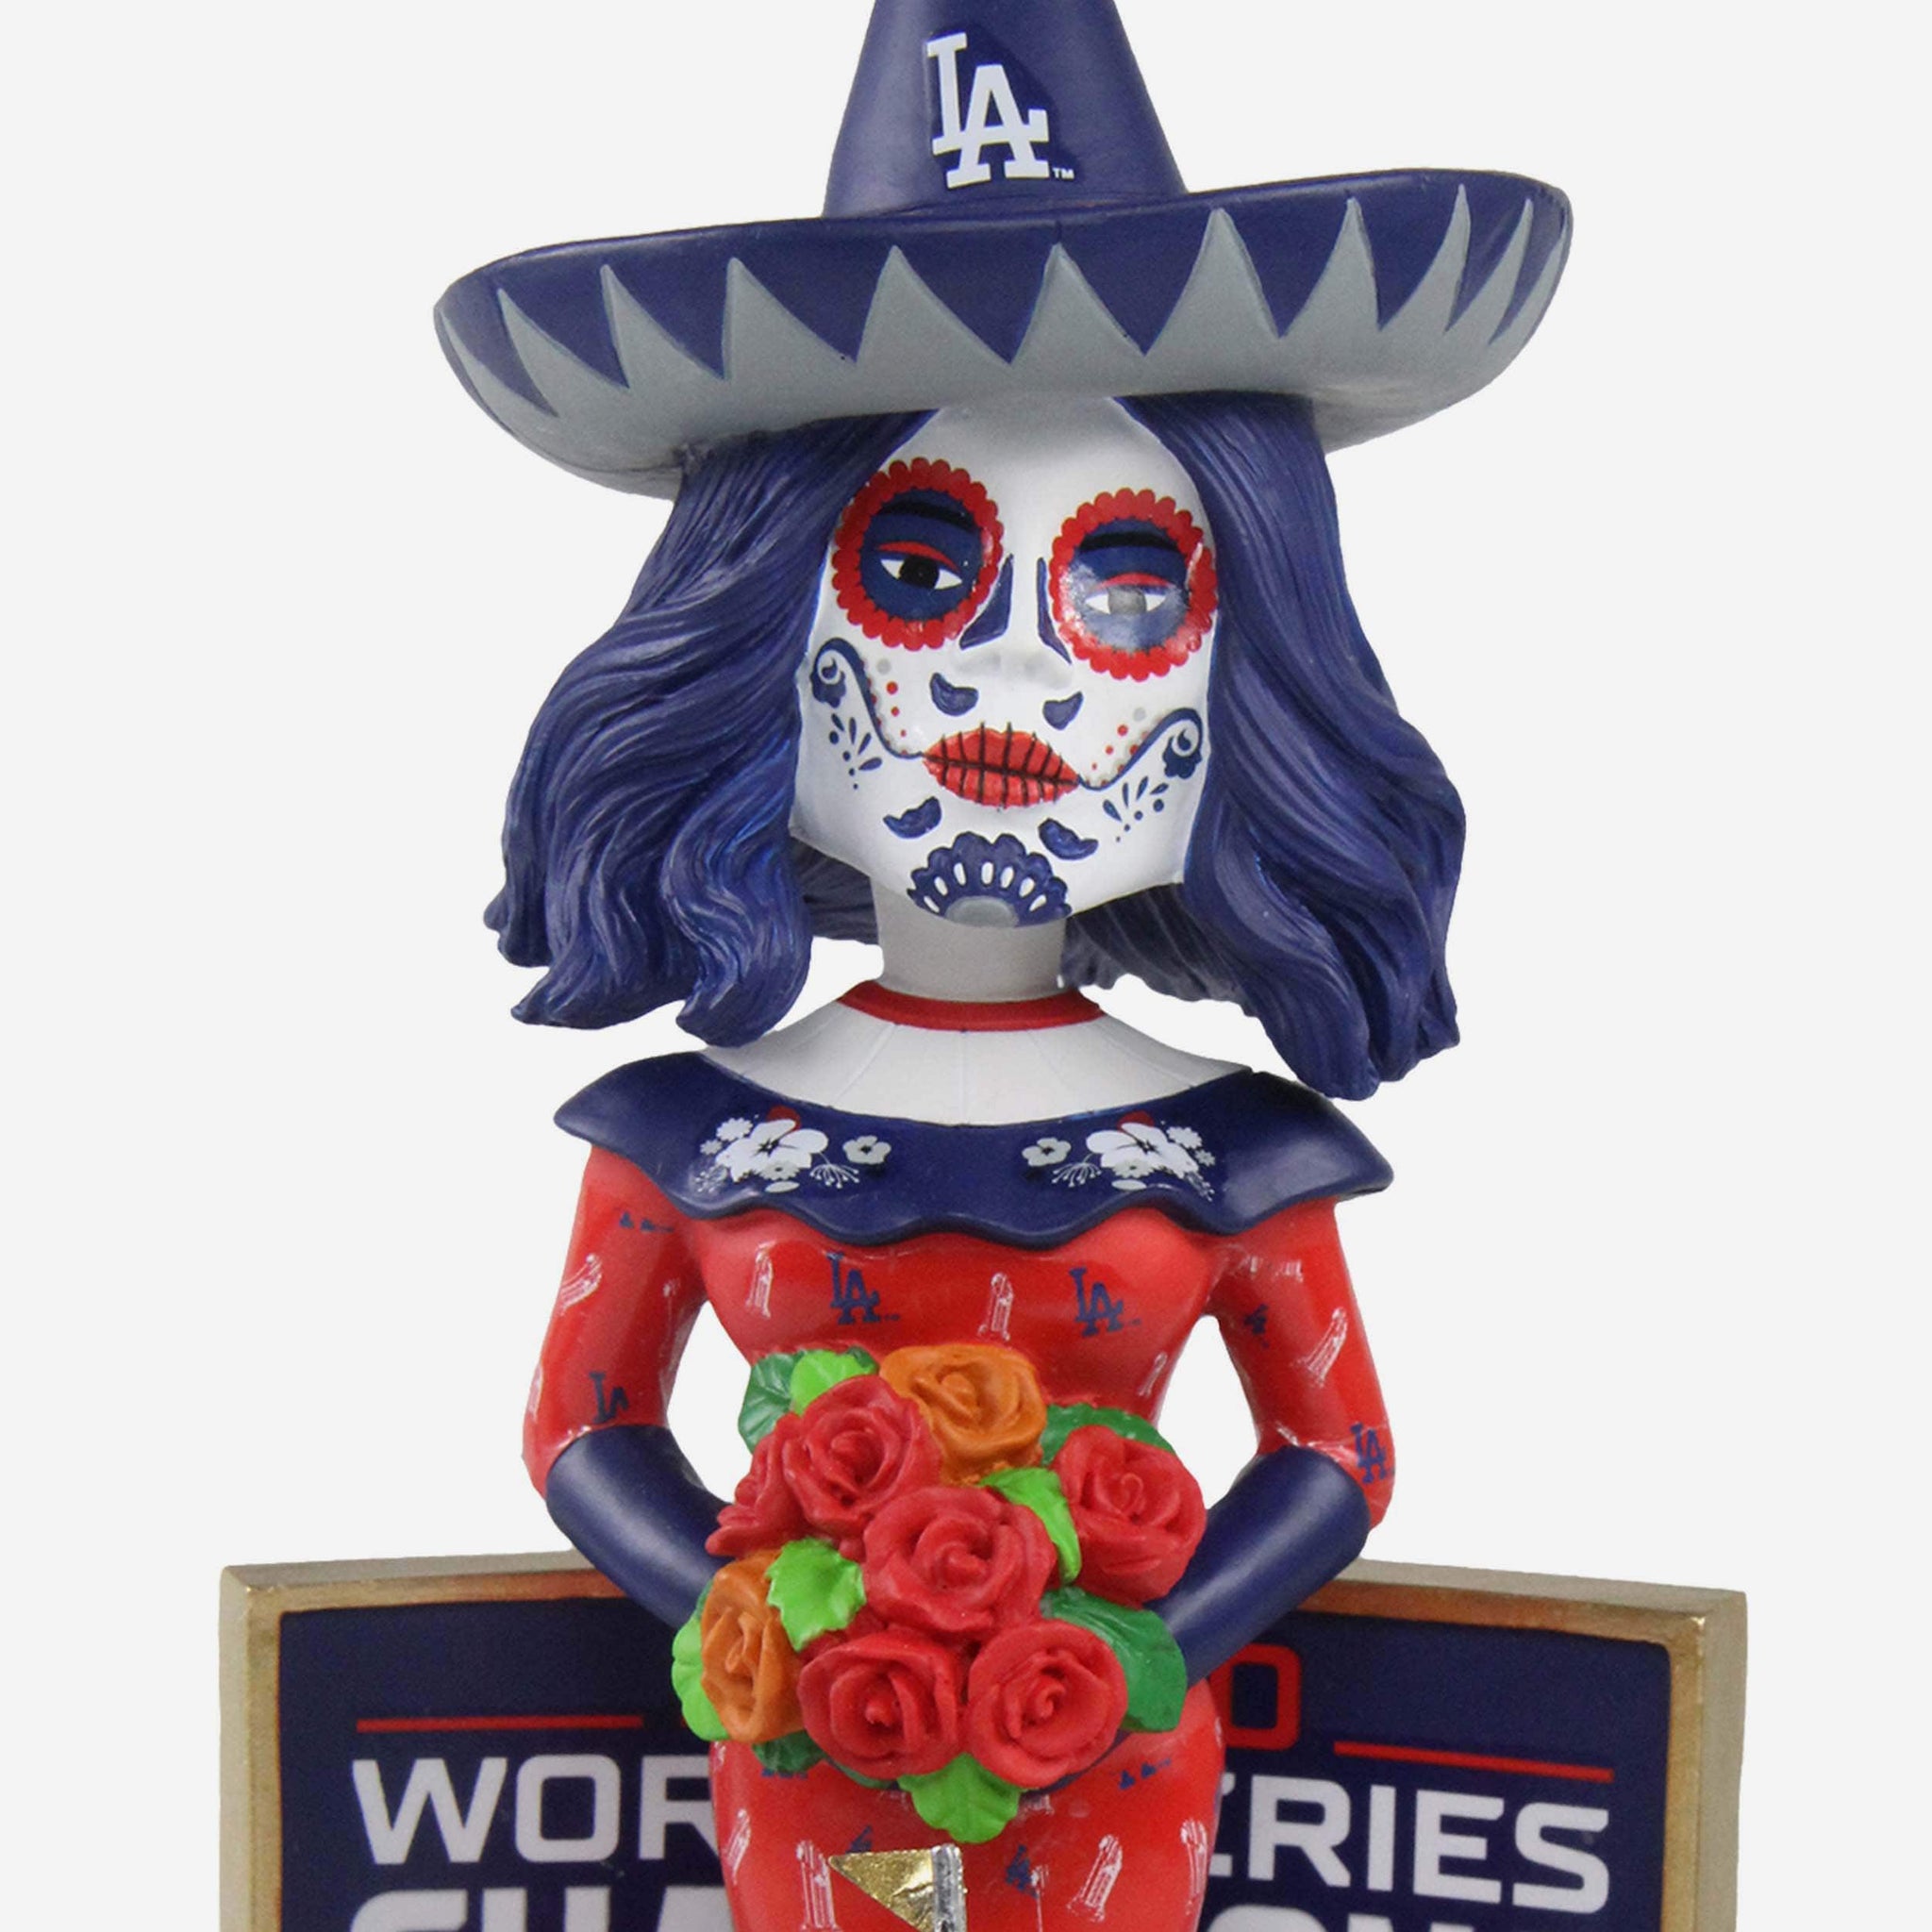 Official Los Angeles Dodgers Dia De Los Dodgers Skull Women New